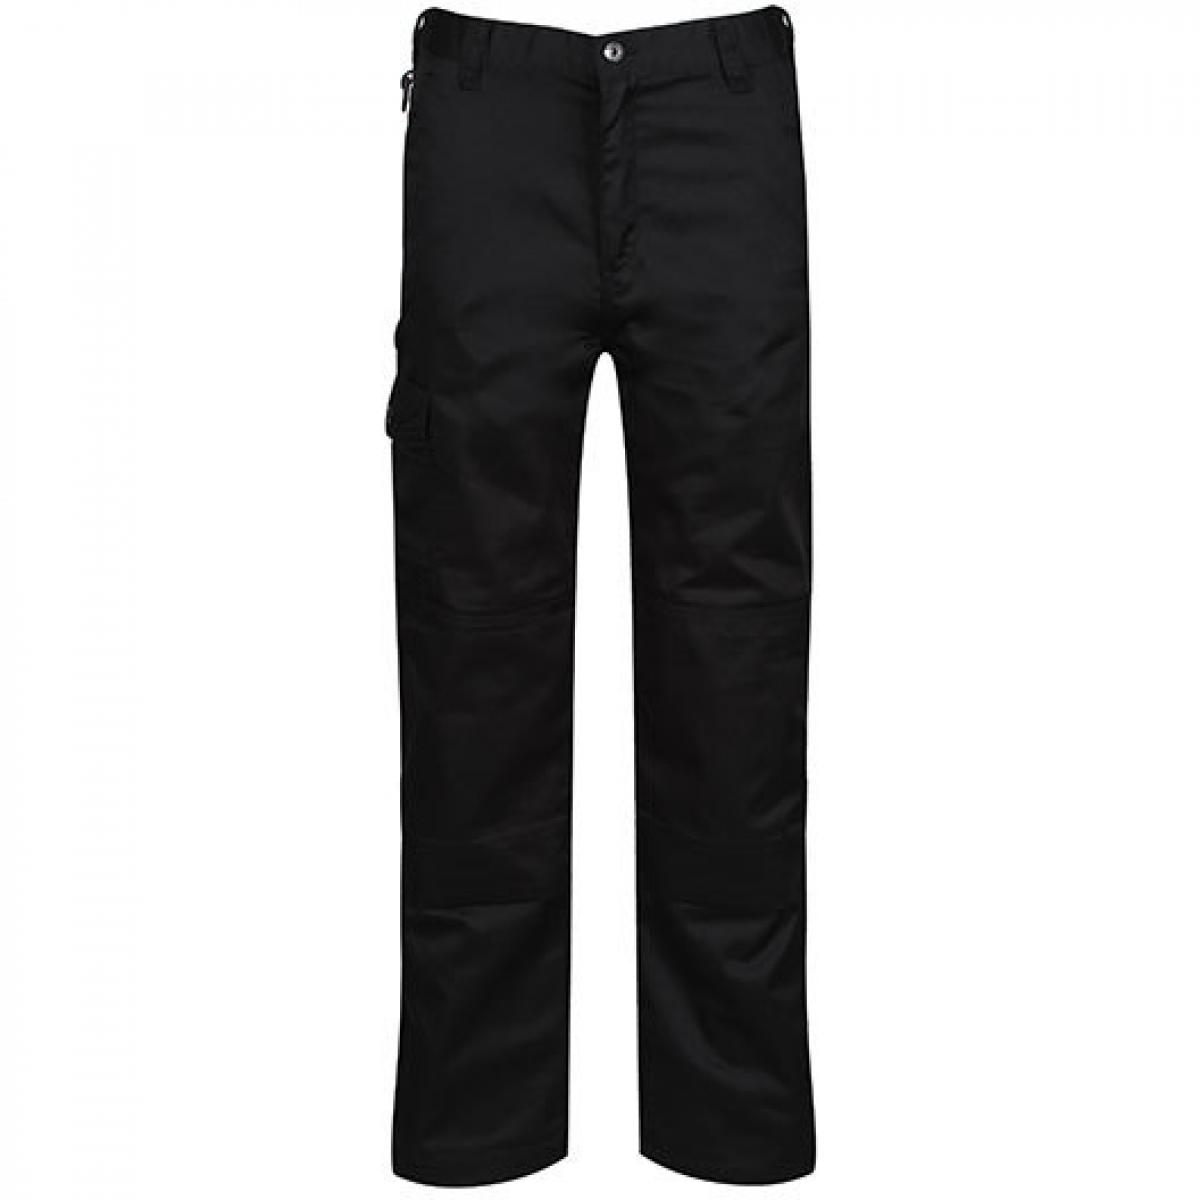 Hersteller: Regatta Herstellernummer: TRJ500 Artikelbezeichnung: Herren Arbeitshose Pro Cargo Trouser Farbe: Black